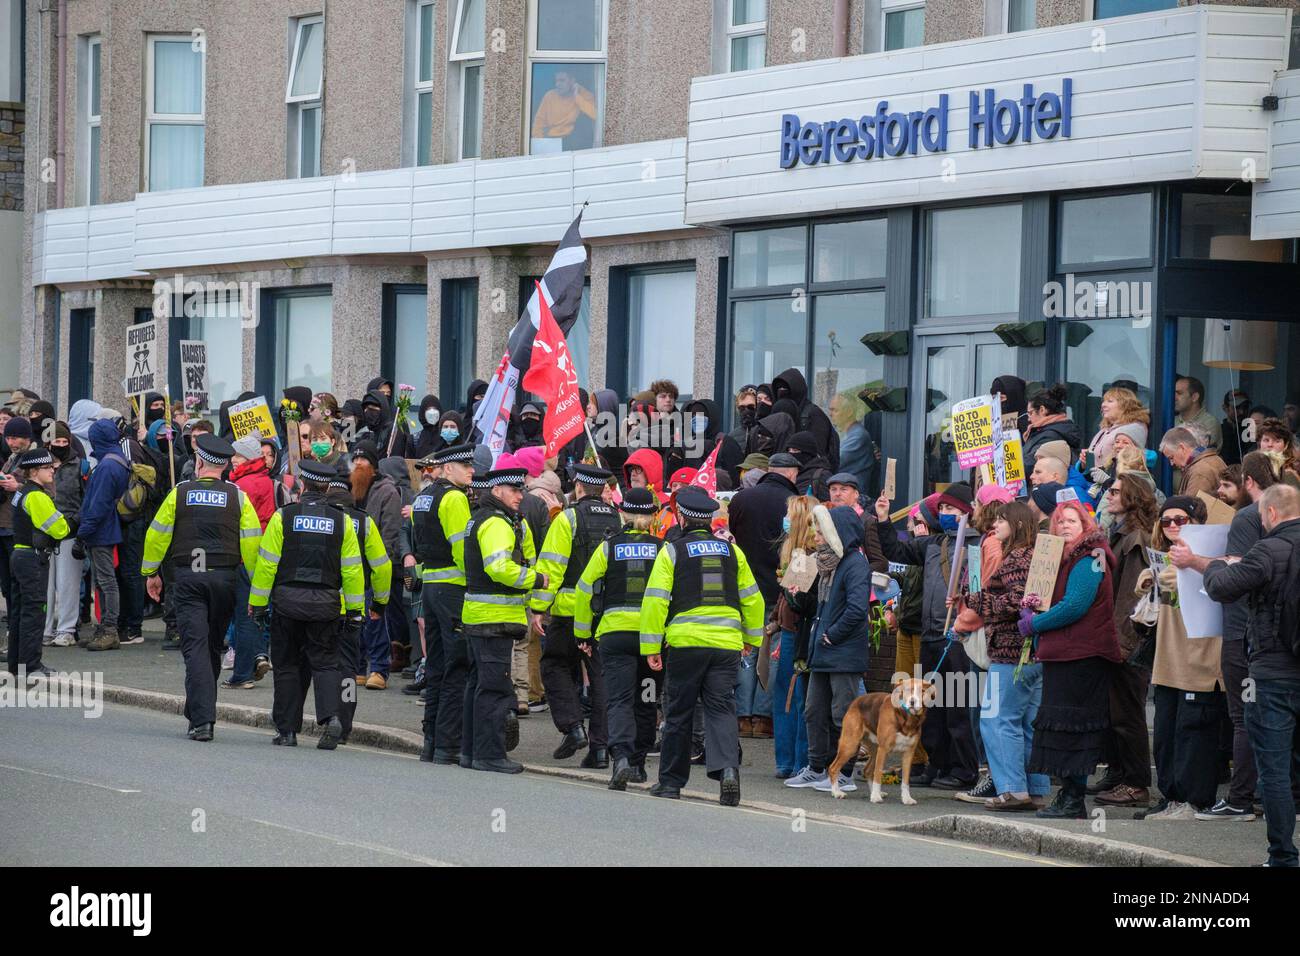 Antifaschisten von Cornwall Resists stehen vor dem Beresford Hotel in Newquay, Cornwall, in dem Flüchtlinge untergebracht sind, während Demonstranten der rechtsextremen Gruppe Patriotic Alternative dagegen protestieren. Foto: Samstag, 25. Februar 2023. Stockfoto